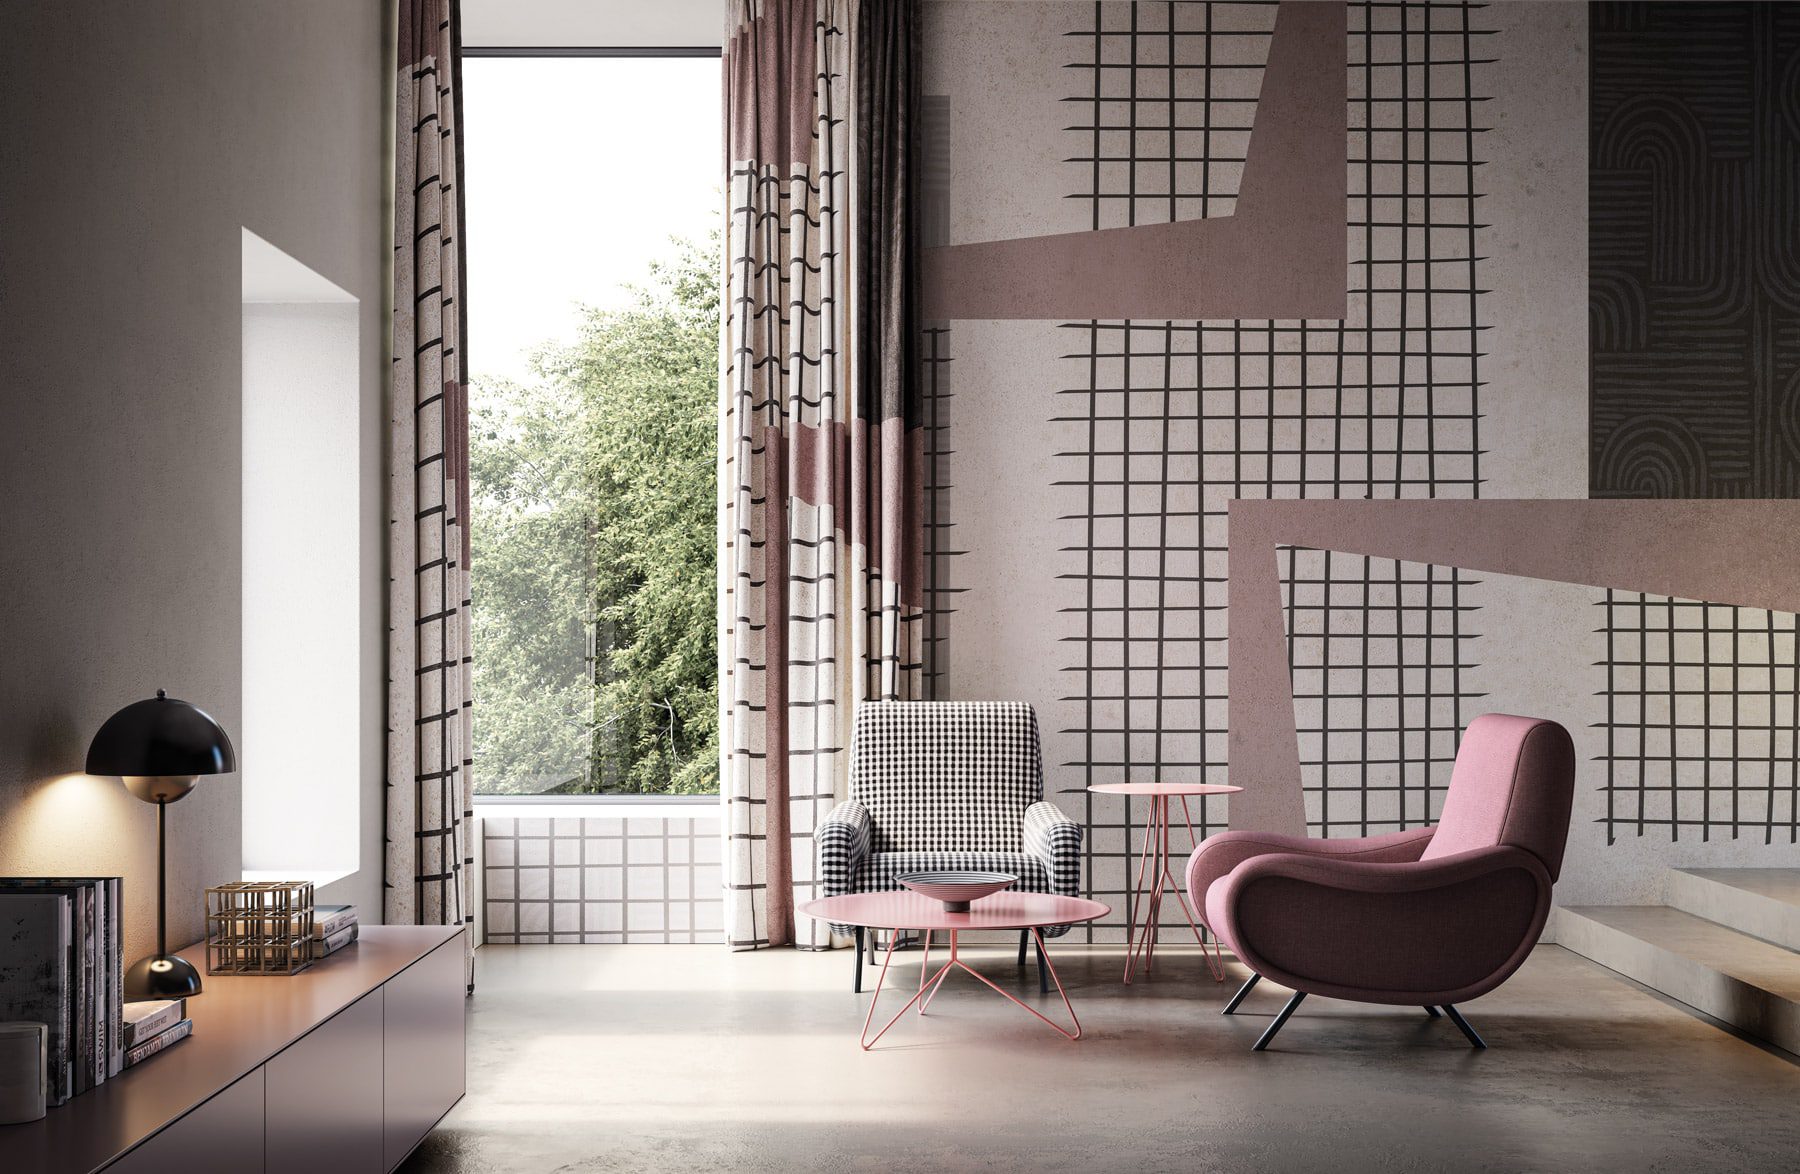 Die geometrische Tapete von Instabilelab ist eine stilvolle Wahl, die Modernität und Design vereint. Entdecken Sie die exklusive Kollektion